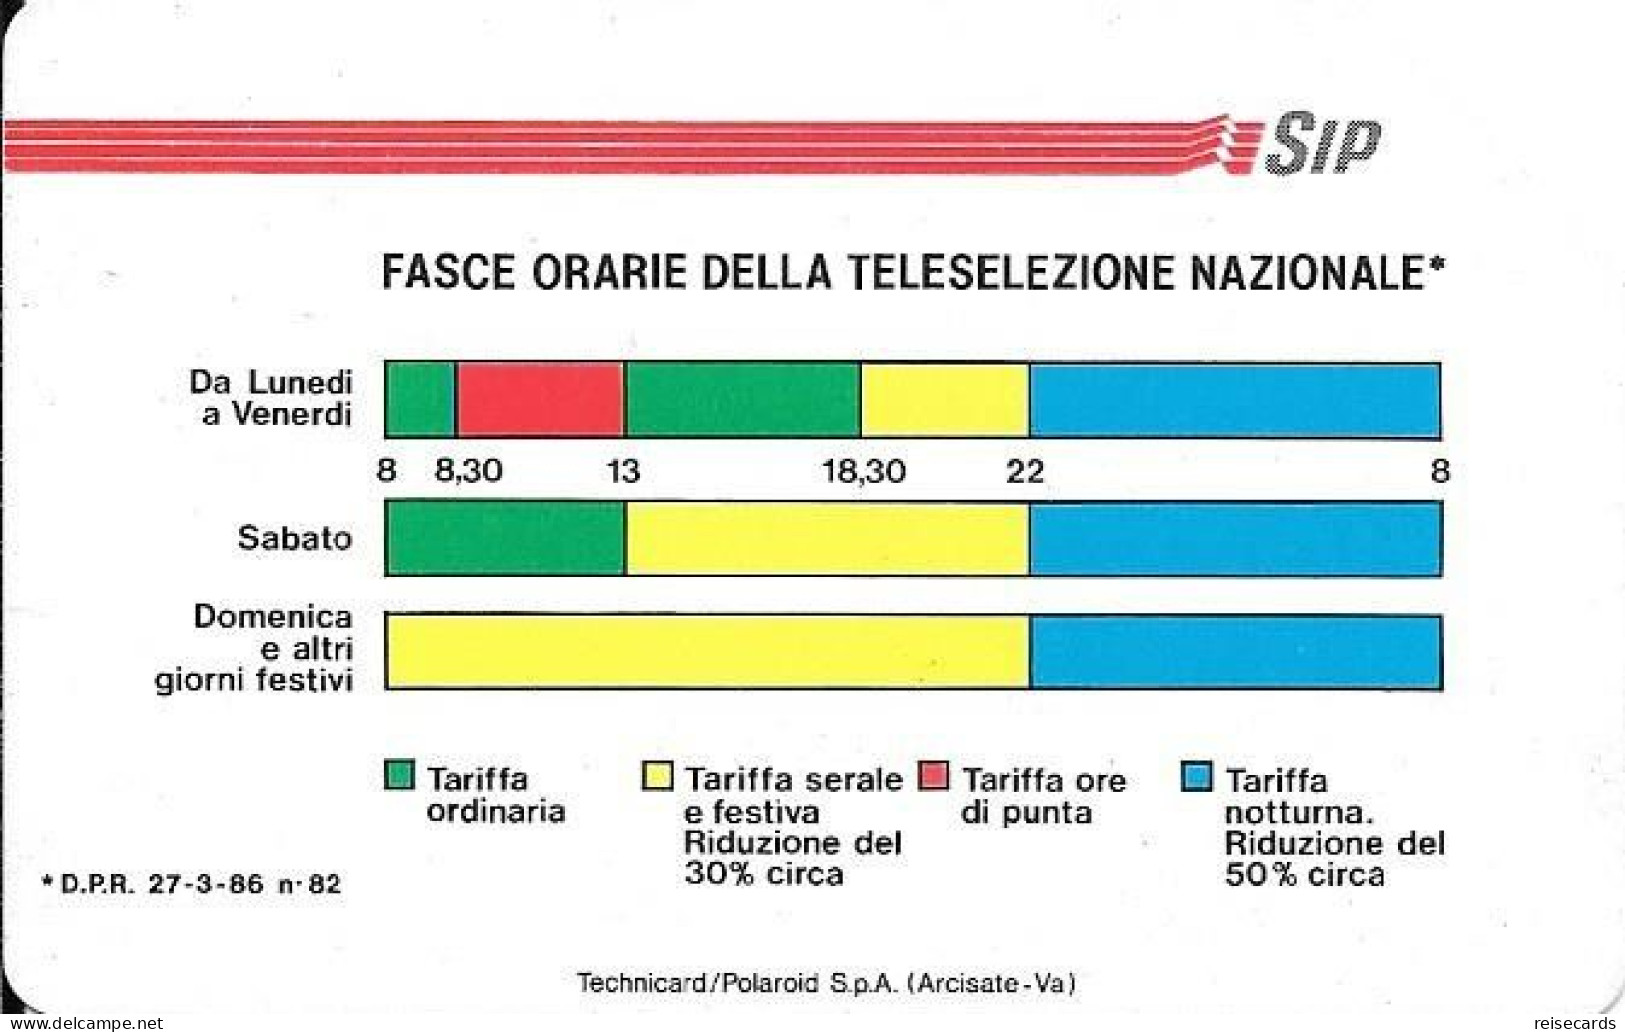 Italy: Telecom Italia SIP - Fasce Orarie Della Teleselezione Nazionale. Watermarks - Public Advertising